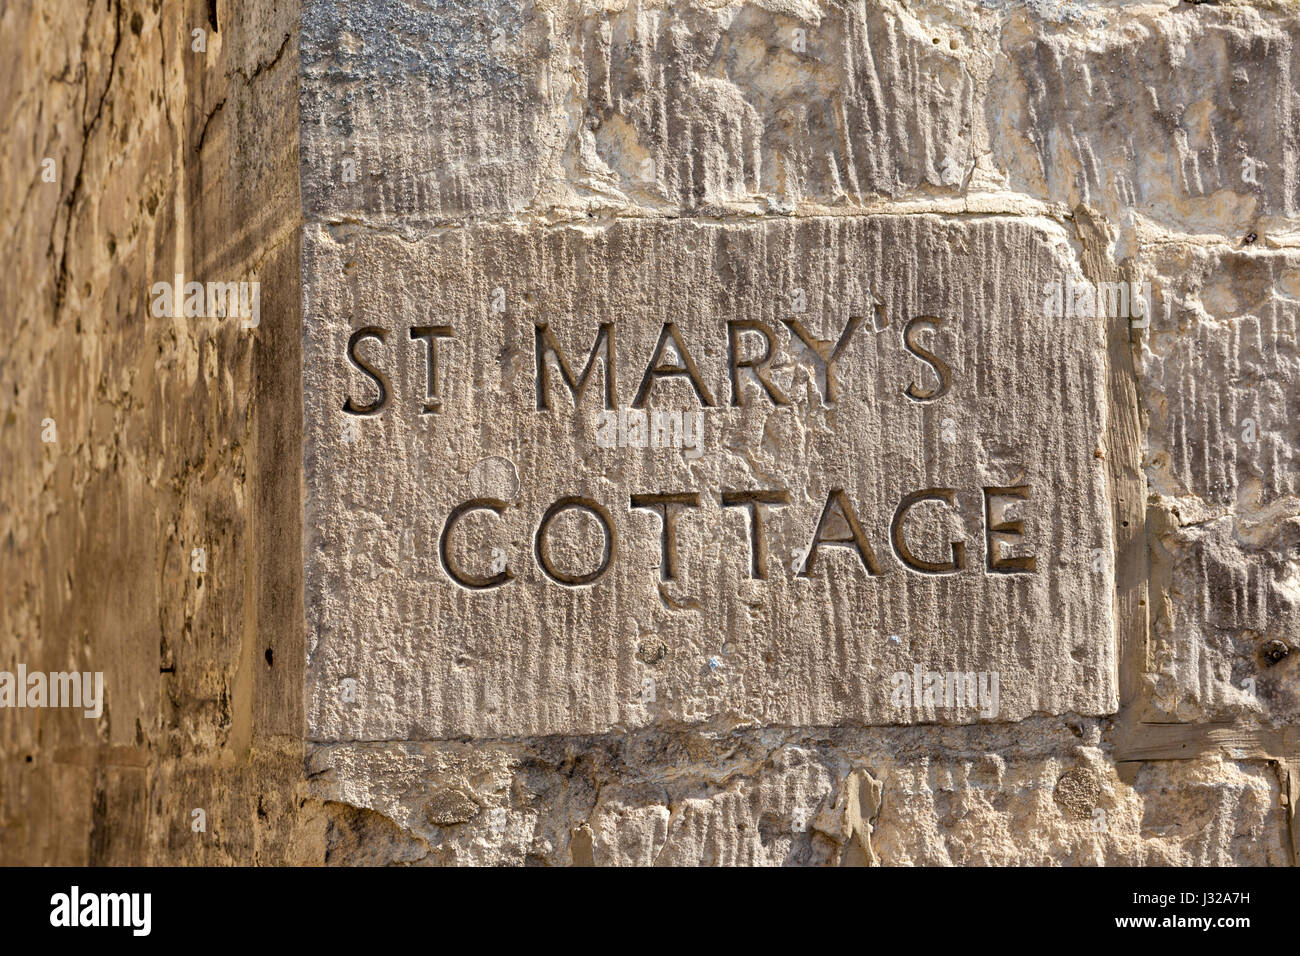 St Marys Cottage nome scolpito nella pietra di Cotswold nel villaggio di Painswick, GLOUCESTERSHIRE REGNO UNITO Foto Stock